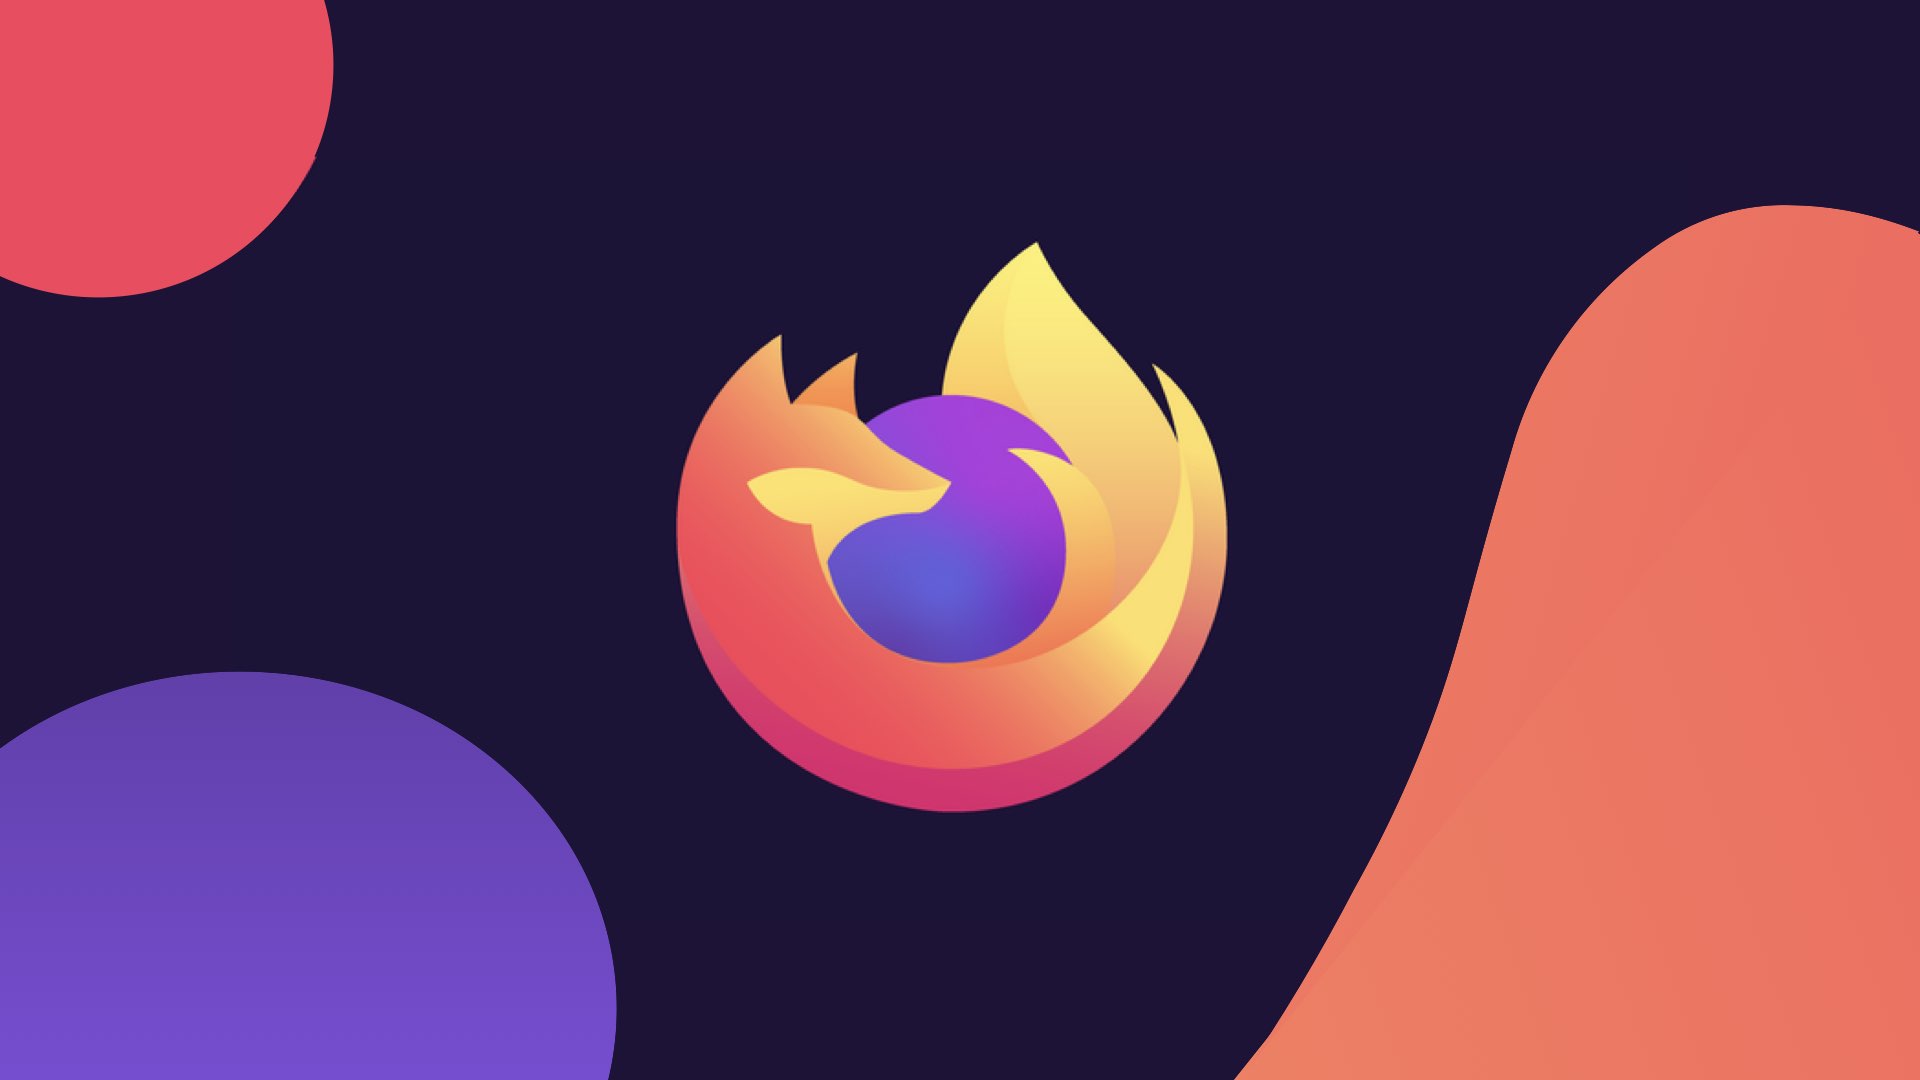 Firefox 68